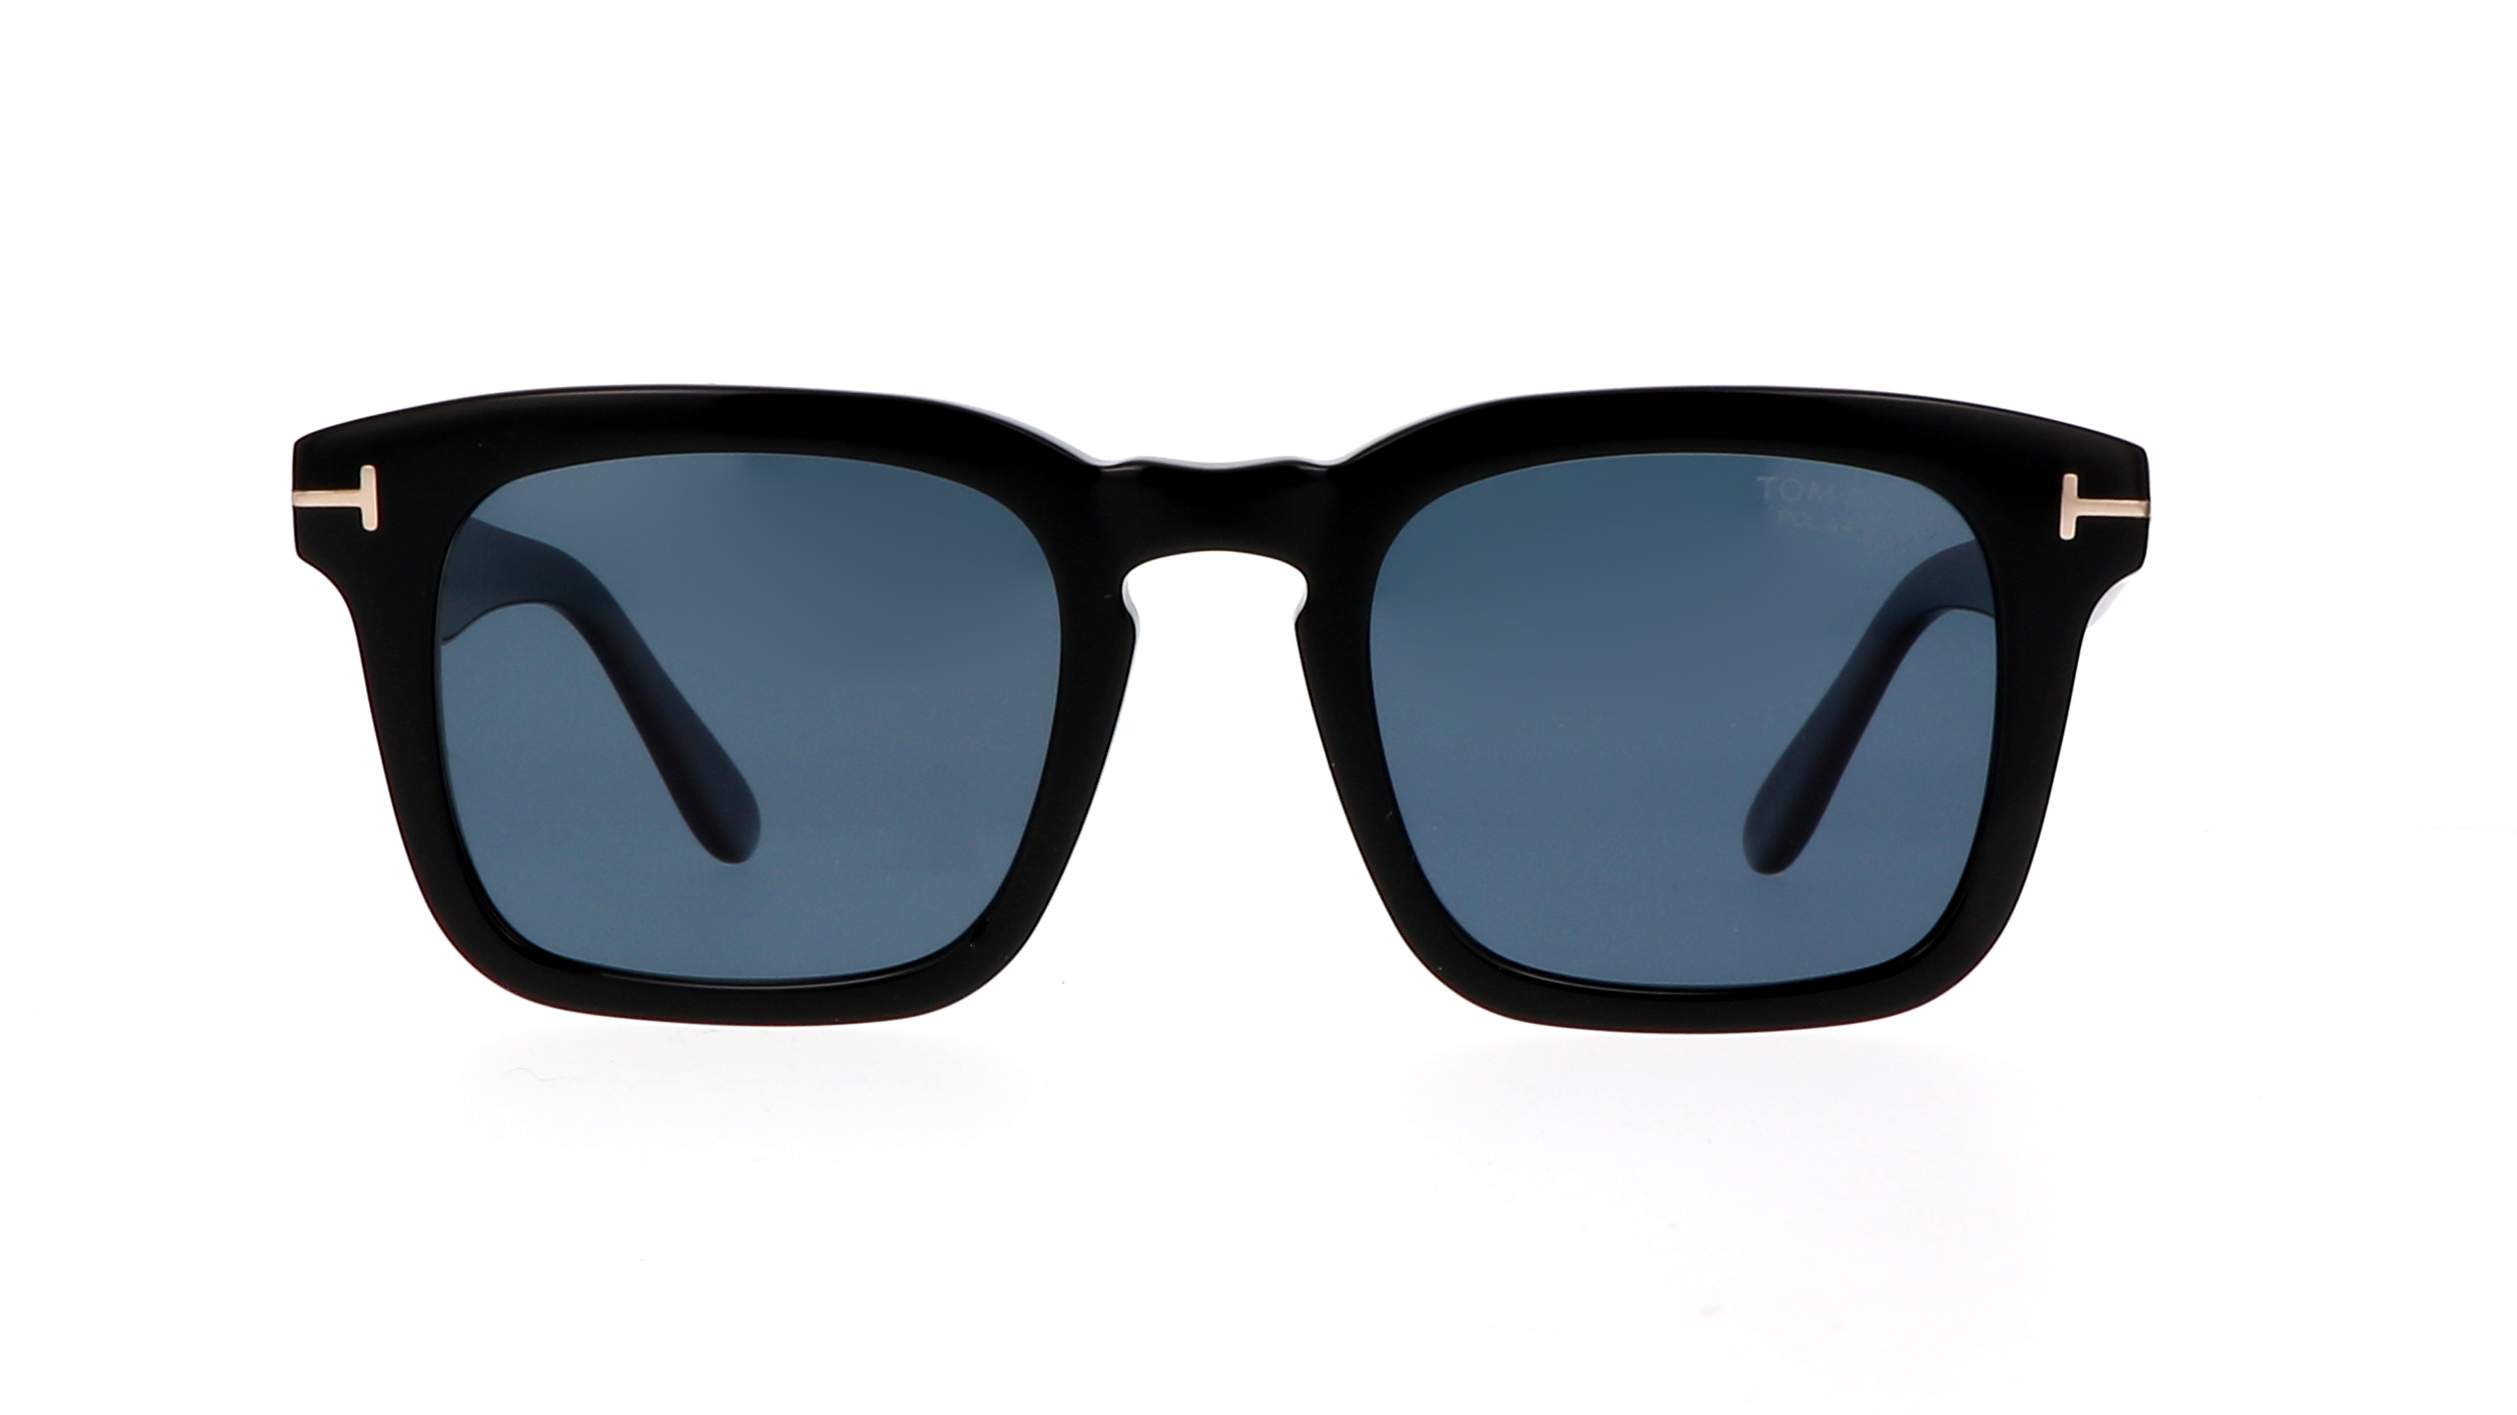 Sunglasses Tom Ford FT0751/S 01V 50-22 Black Polarized in stock | Price ...